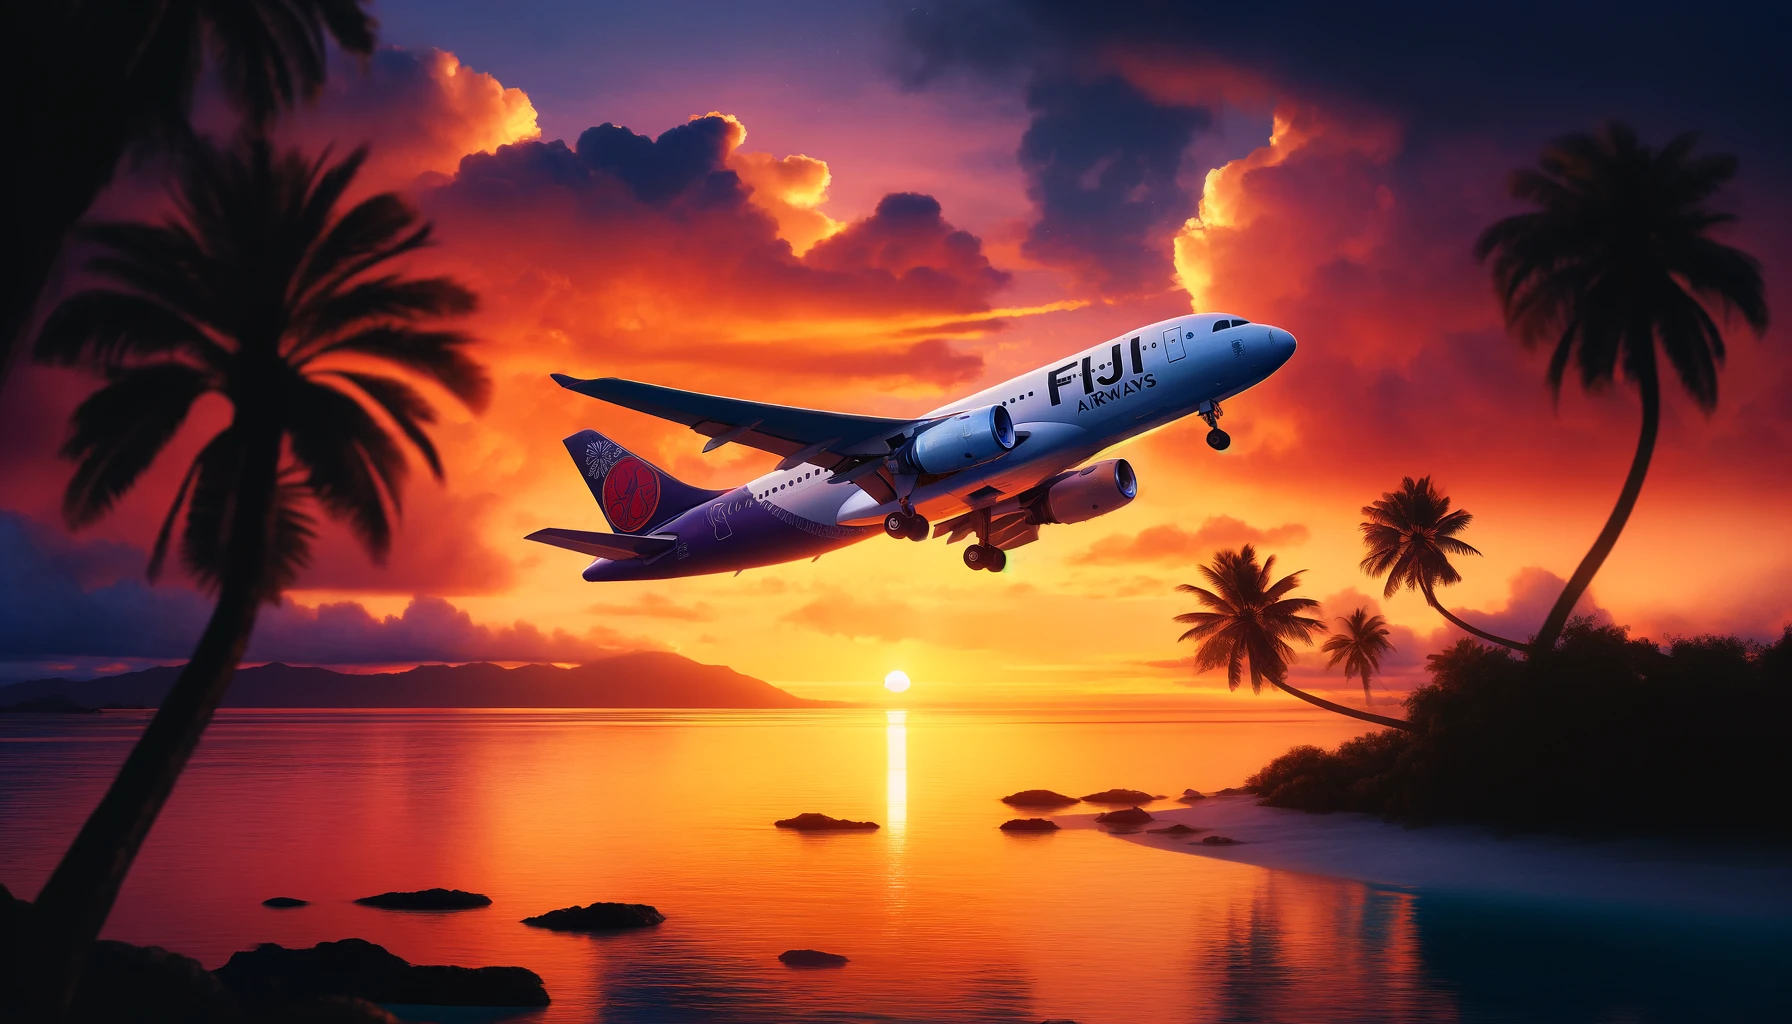 Fiji Airways Company